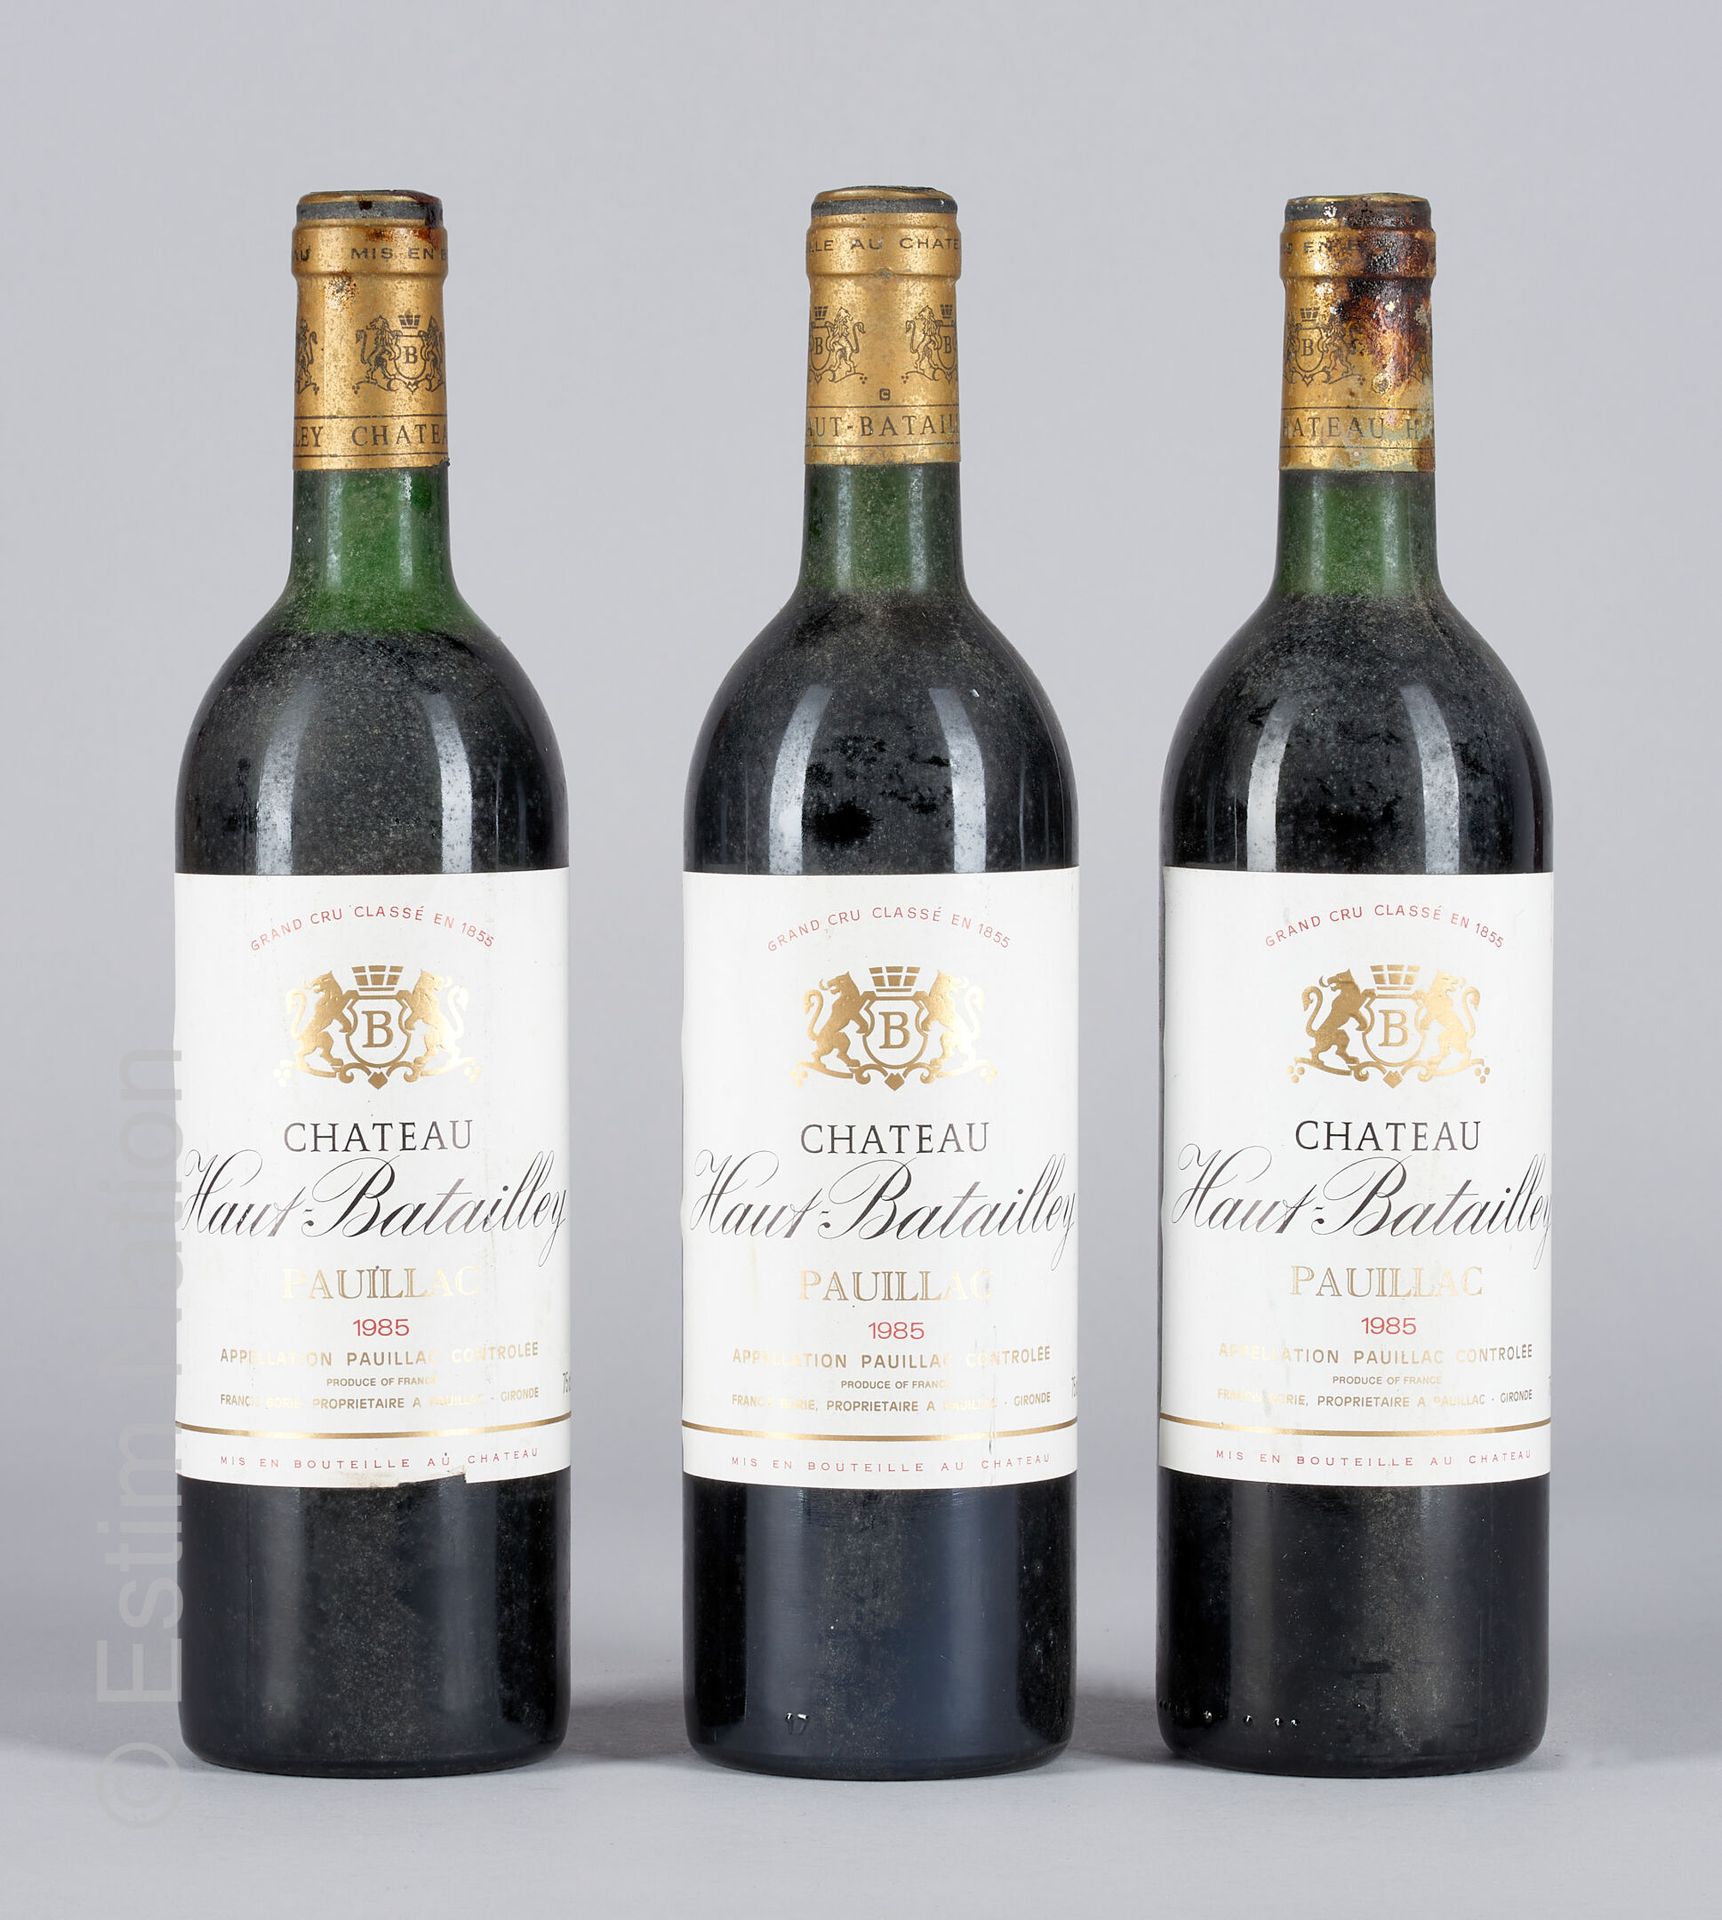 BORDEAUX 3 bouteilles Château Haut Battailley 1985 Pauillac

(N. 2 tlb, E. Lm)